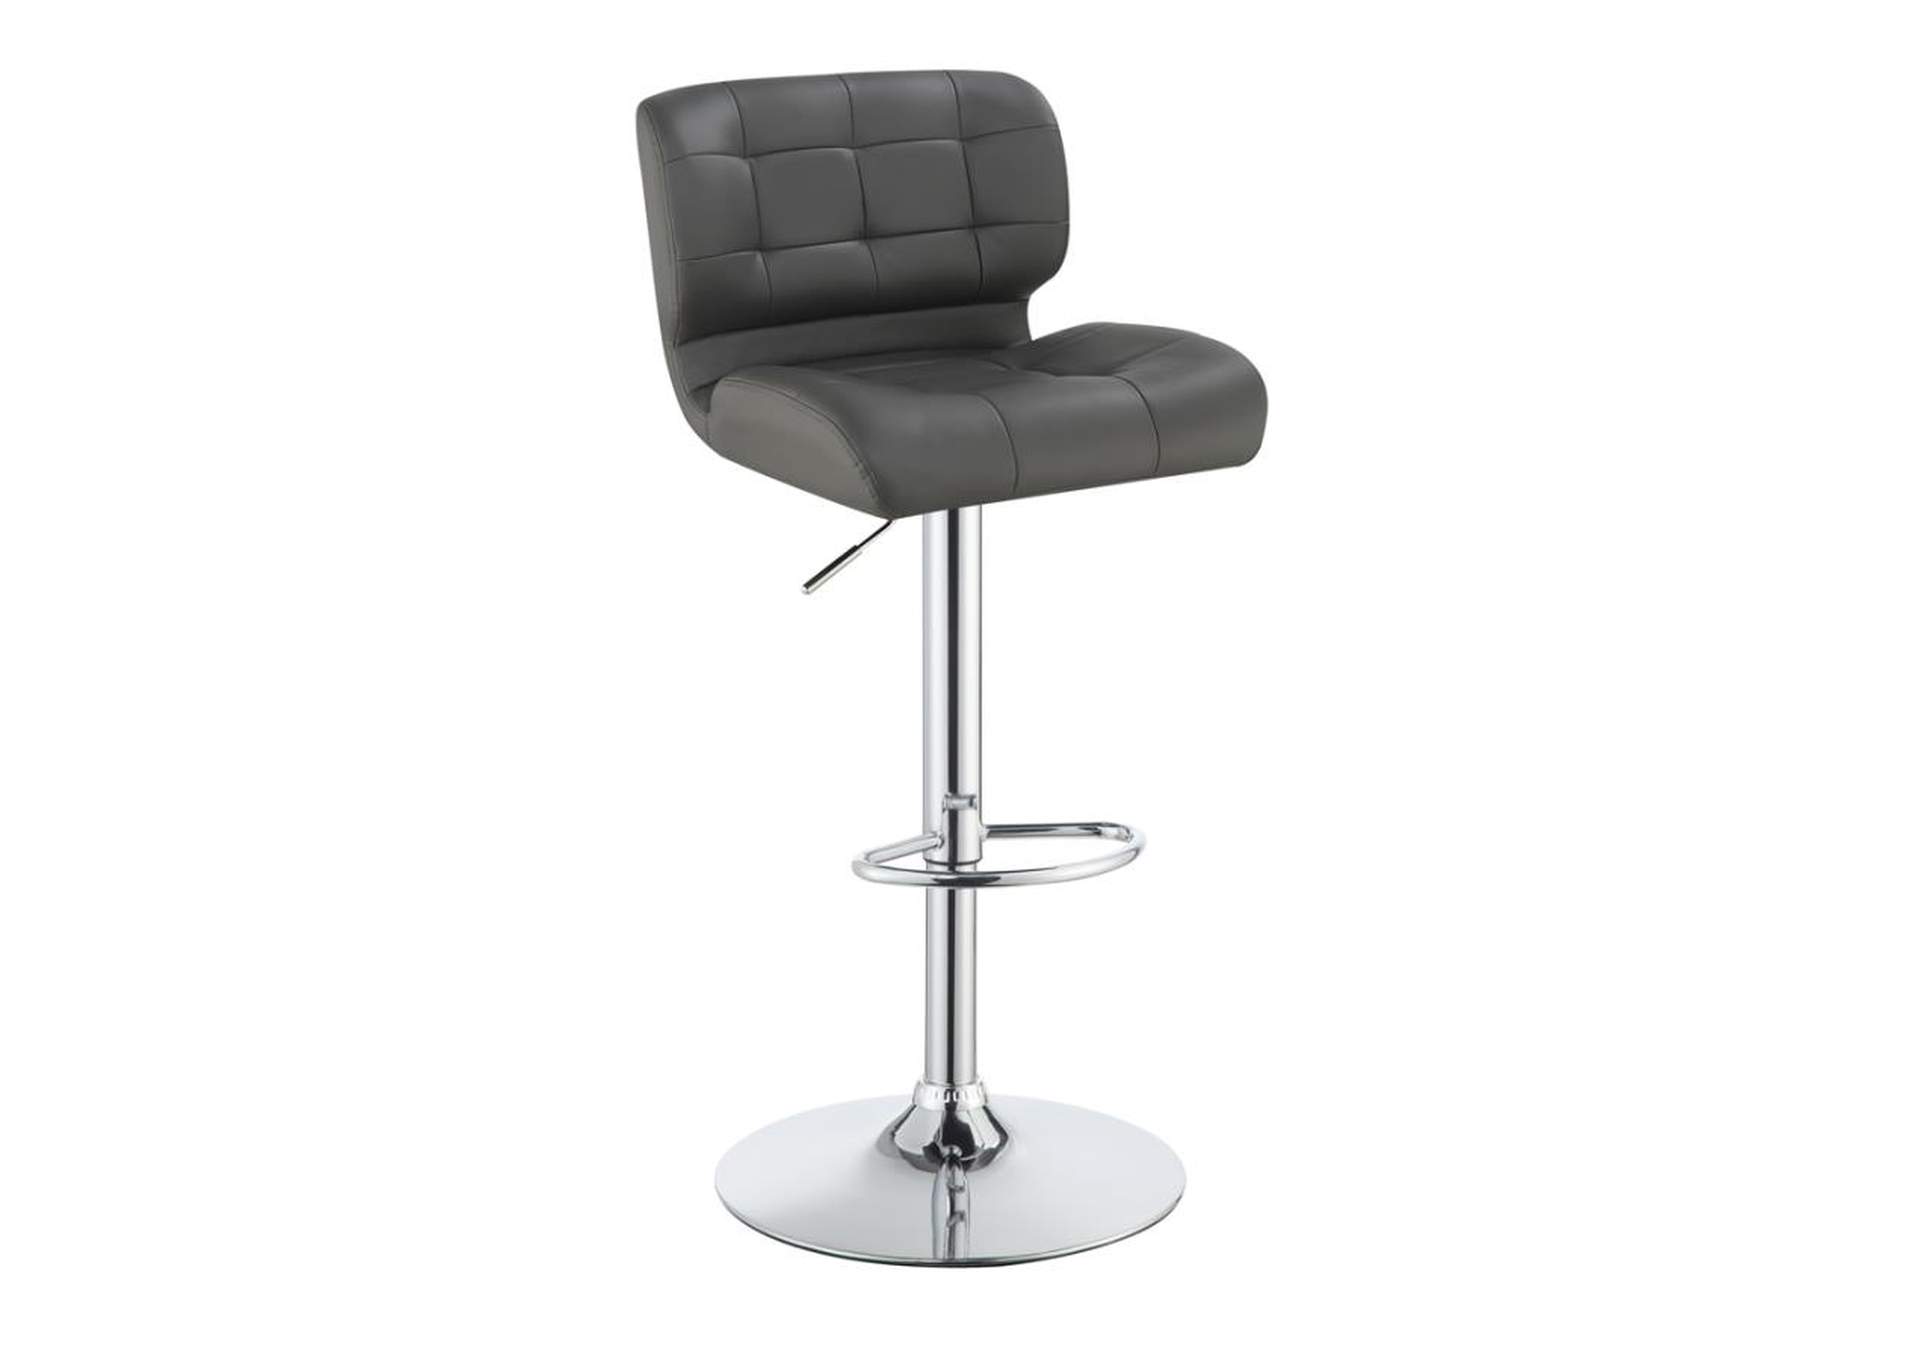 Azalea Upholstered Adjustable Bar Stools Chrome And Grey (Set Of 2),Coaster Furniture